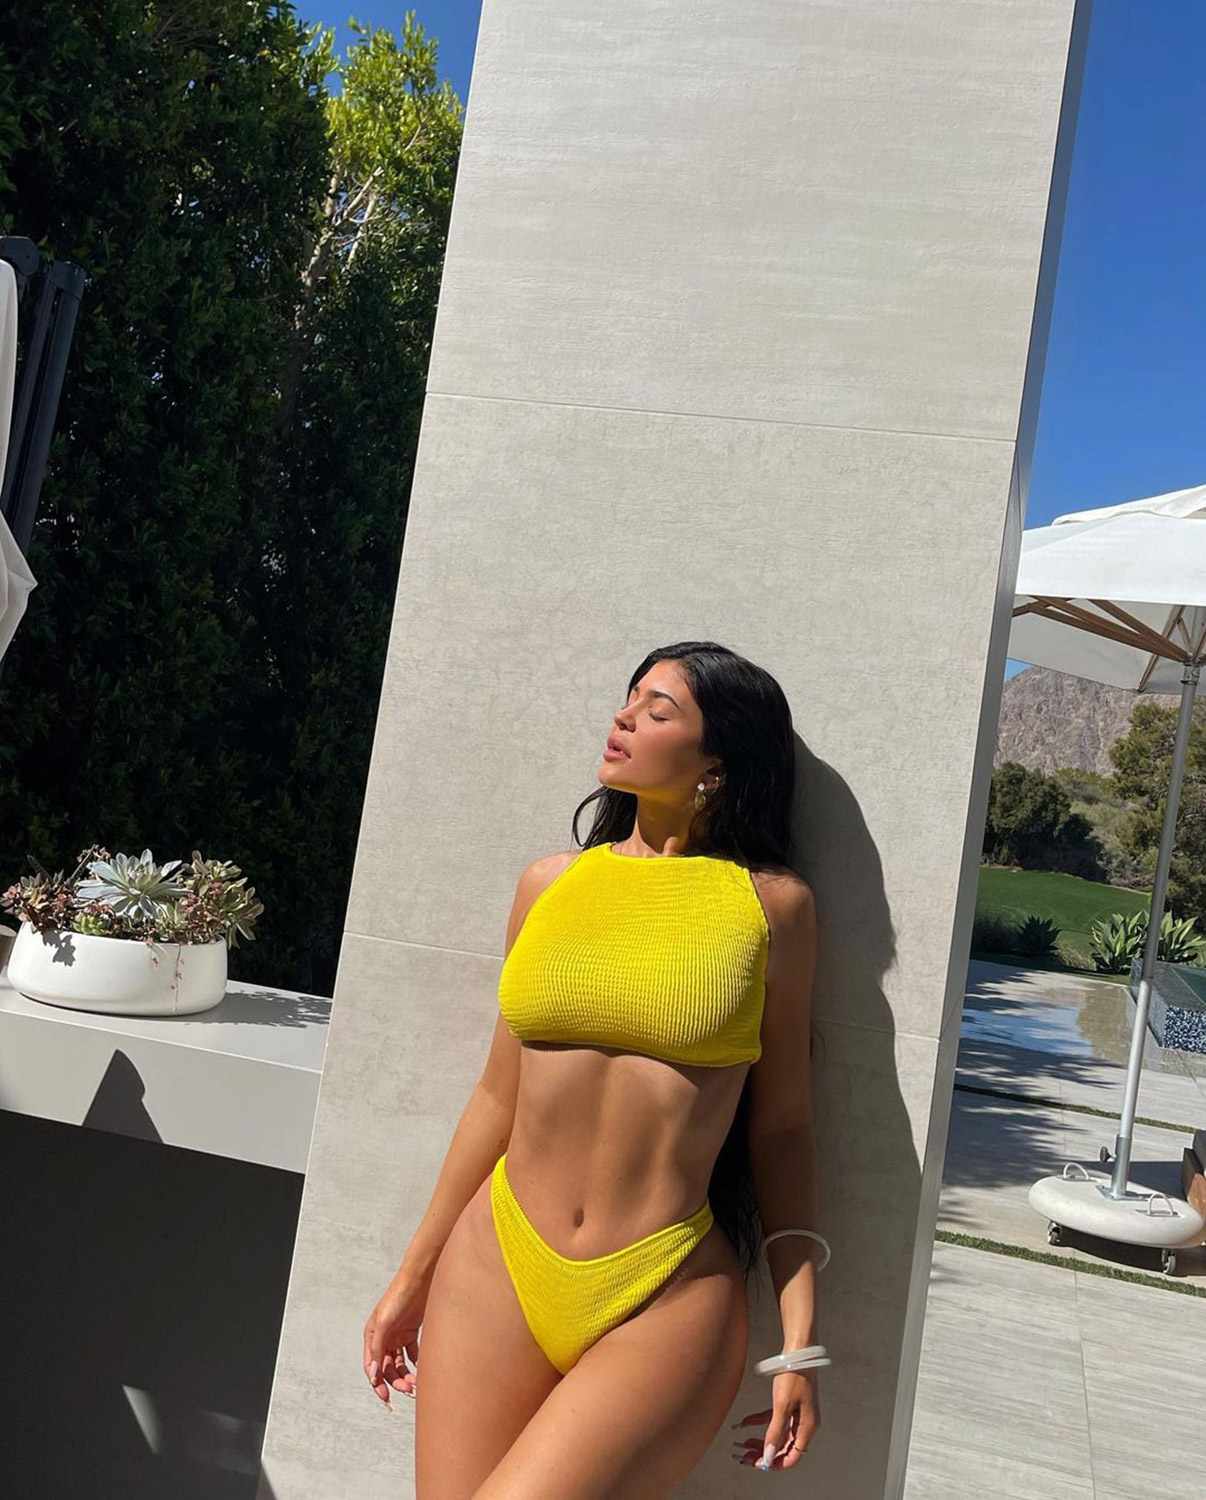 Khloe Kardashian/Kylie Jenner